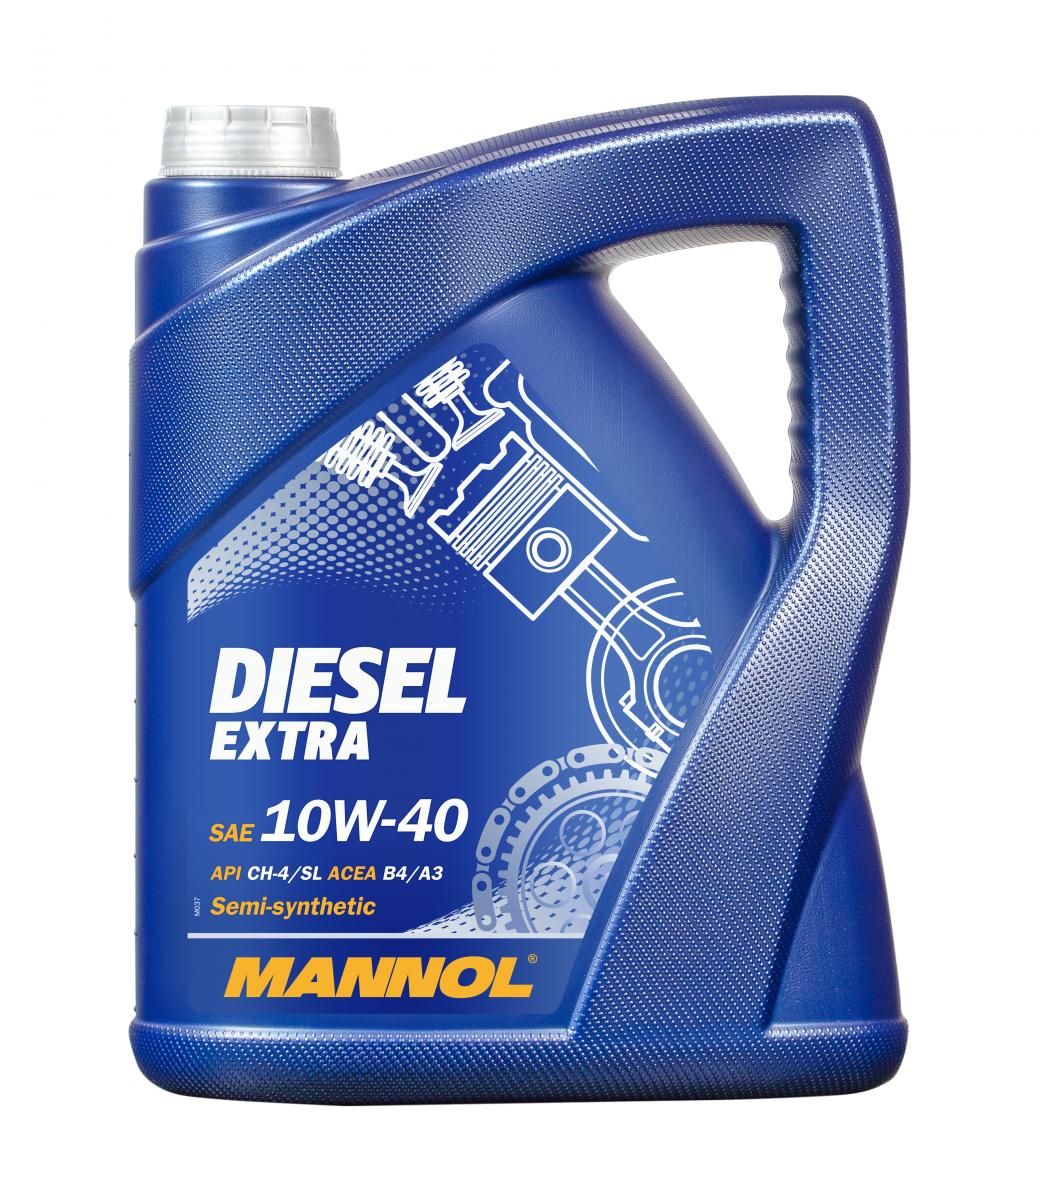 Mannol Diesel Extra 10W-40 10W-40 5.0 Liter